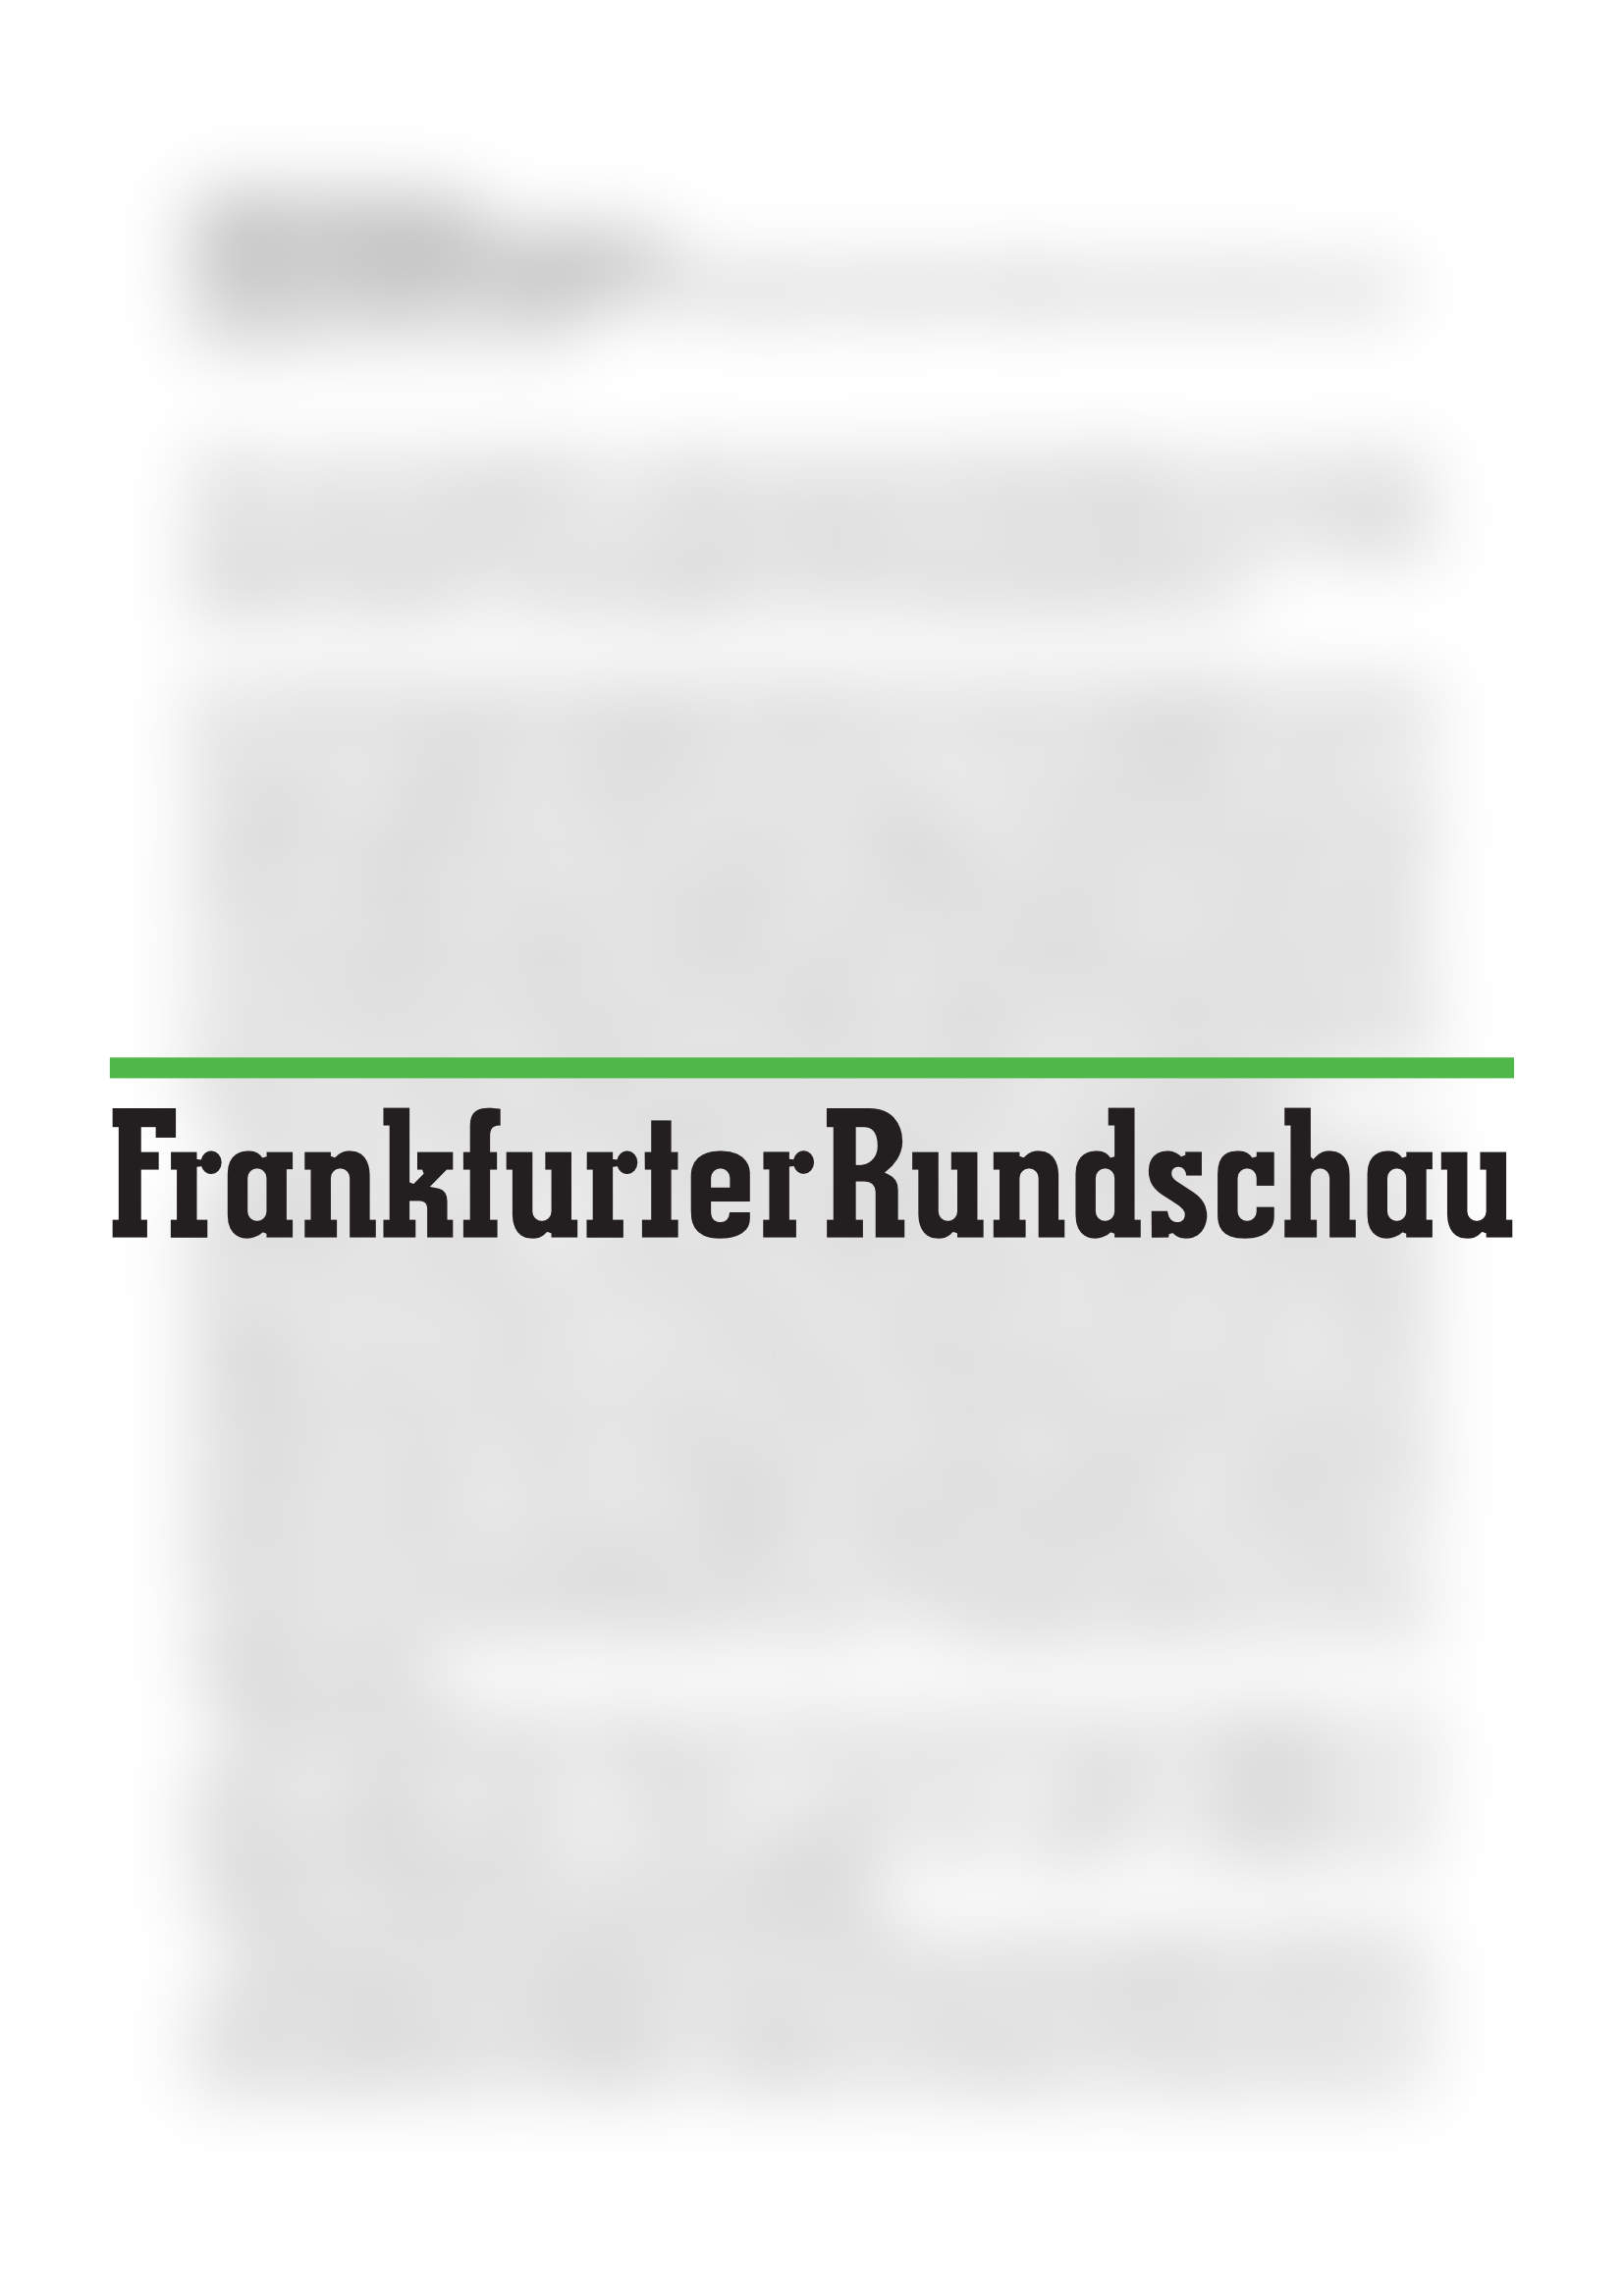 Logo der Frankfurter Rundschau